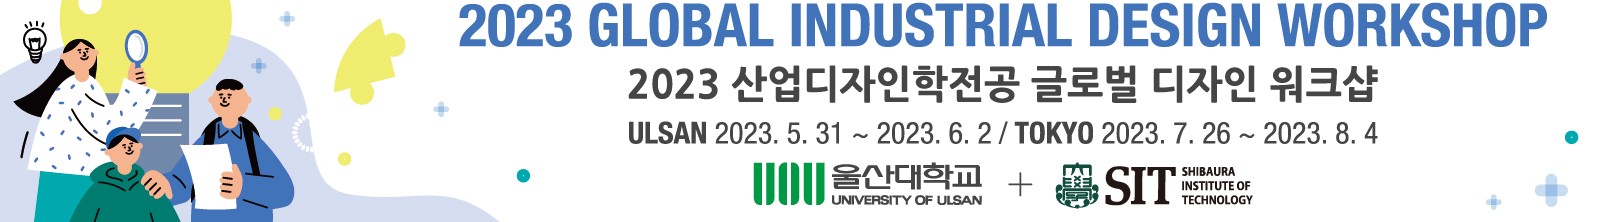 2023 산업디자인학전공 글로벌 디자인 워크샵